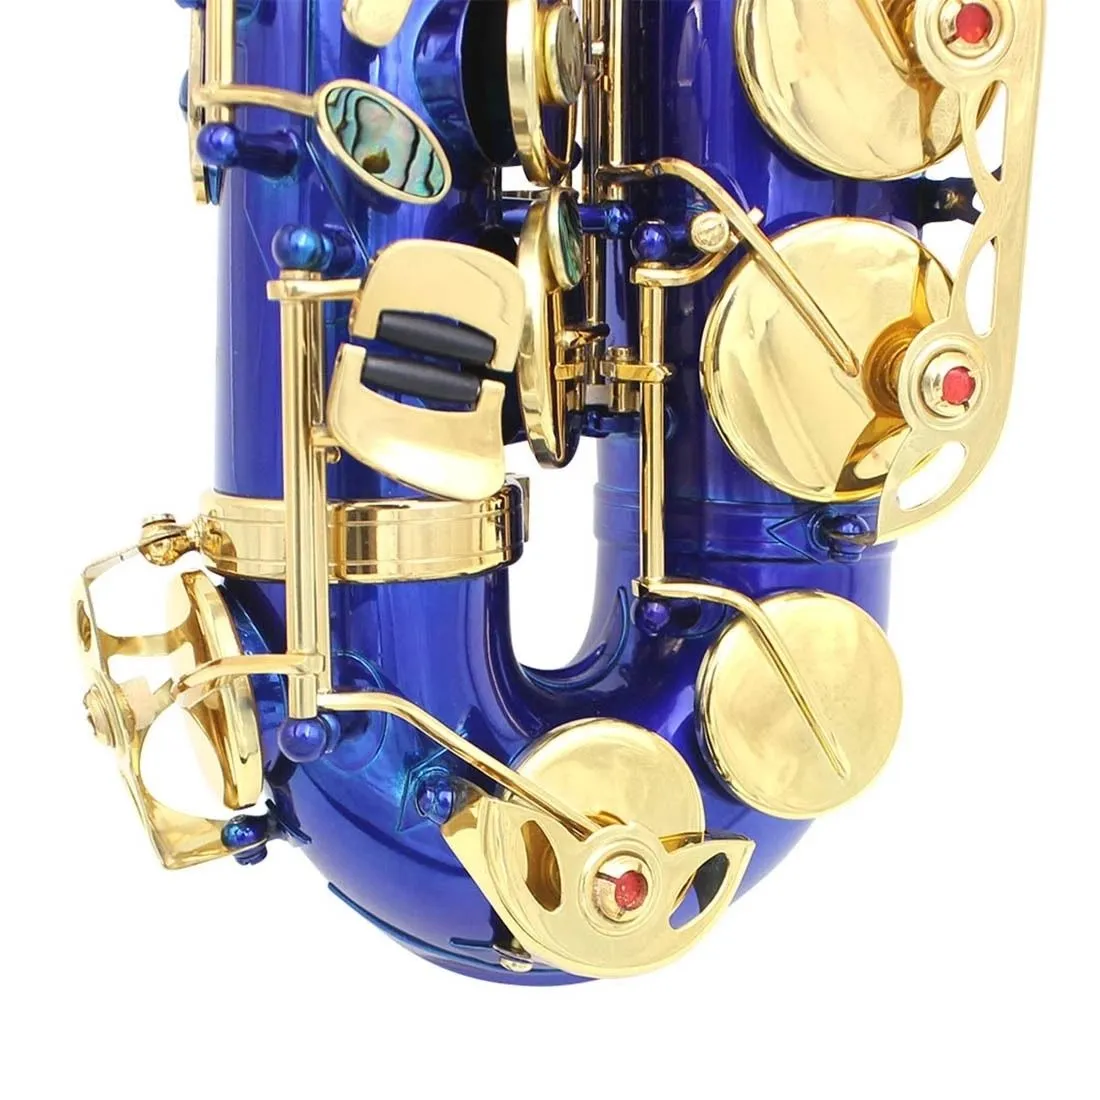 Wysokiej jakości E Flat Professional Alto Saksofon czarny/niebieski/czerwony mosiądz Gold Professional Tone Sax Performance Instrument